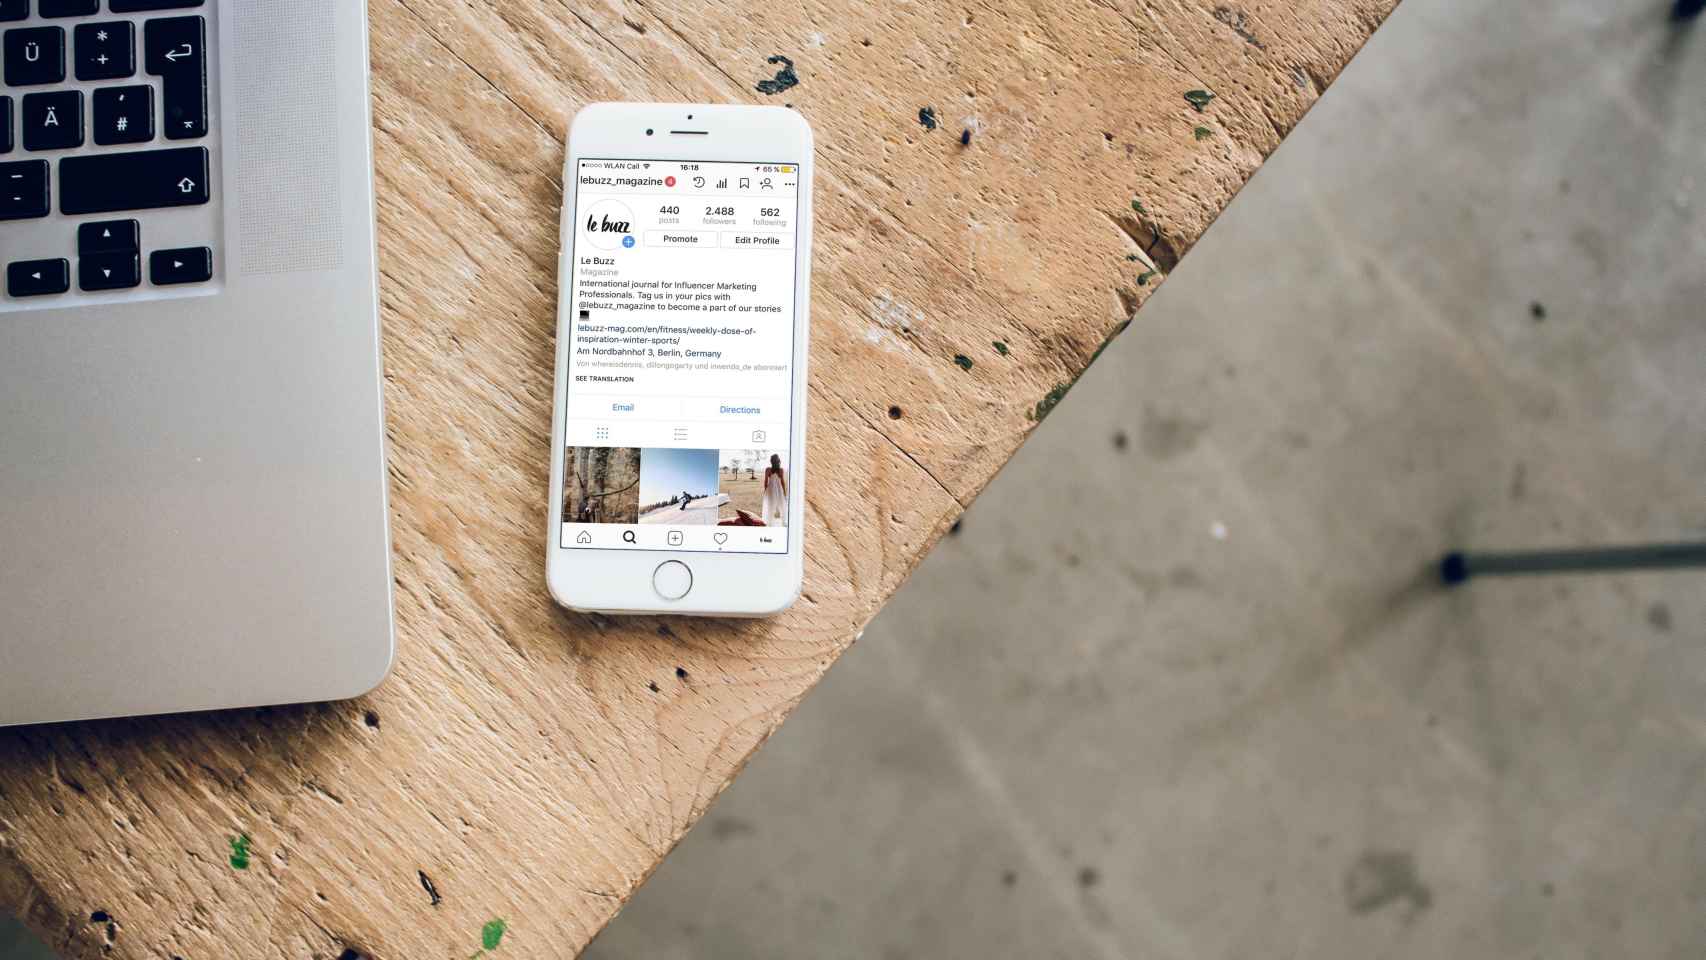 Un teléfono móvil, instrumento habitual de los 'Influencers', con la portada de Instagram y su algoritmo encima de un escritorio de madera / UNSPLASH